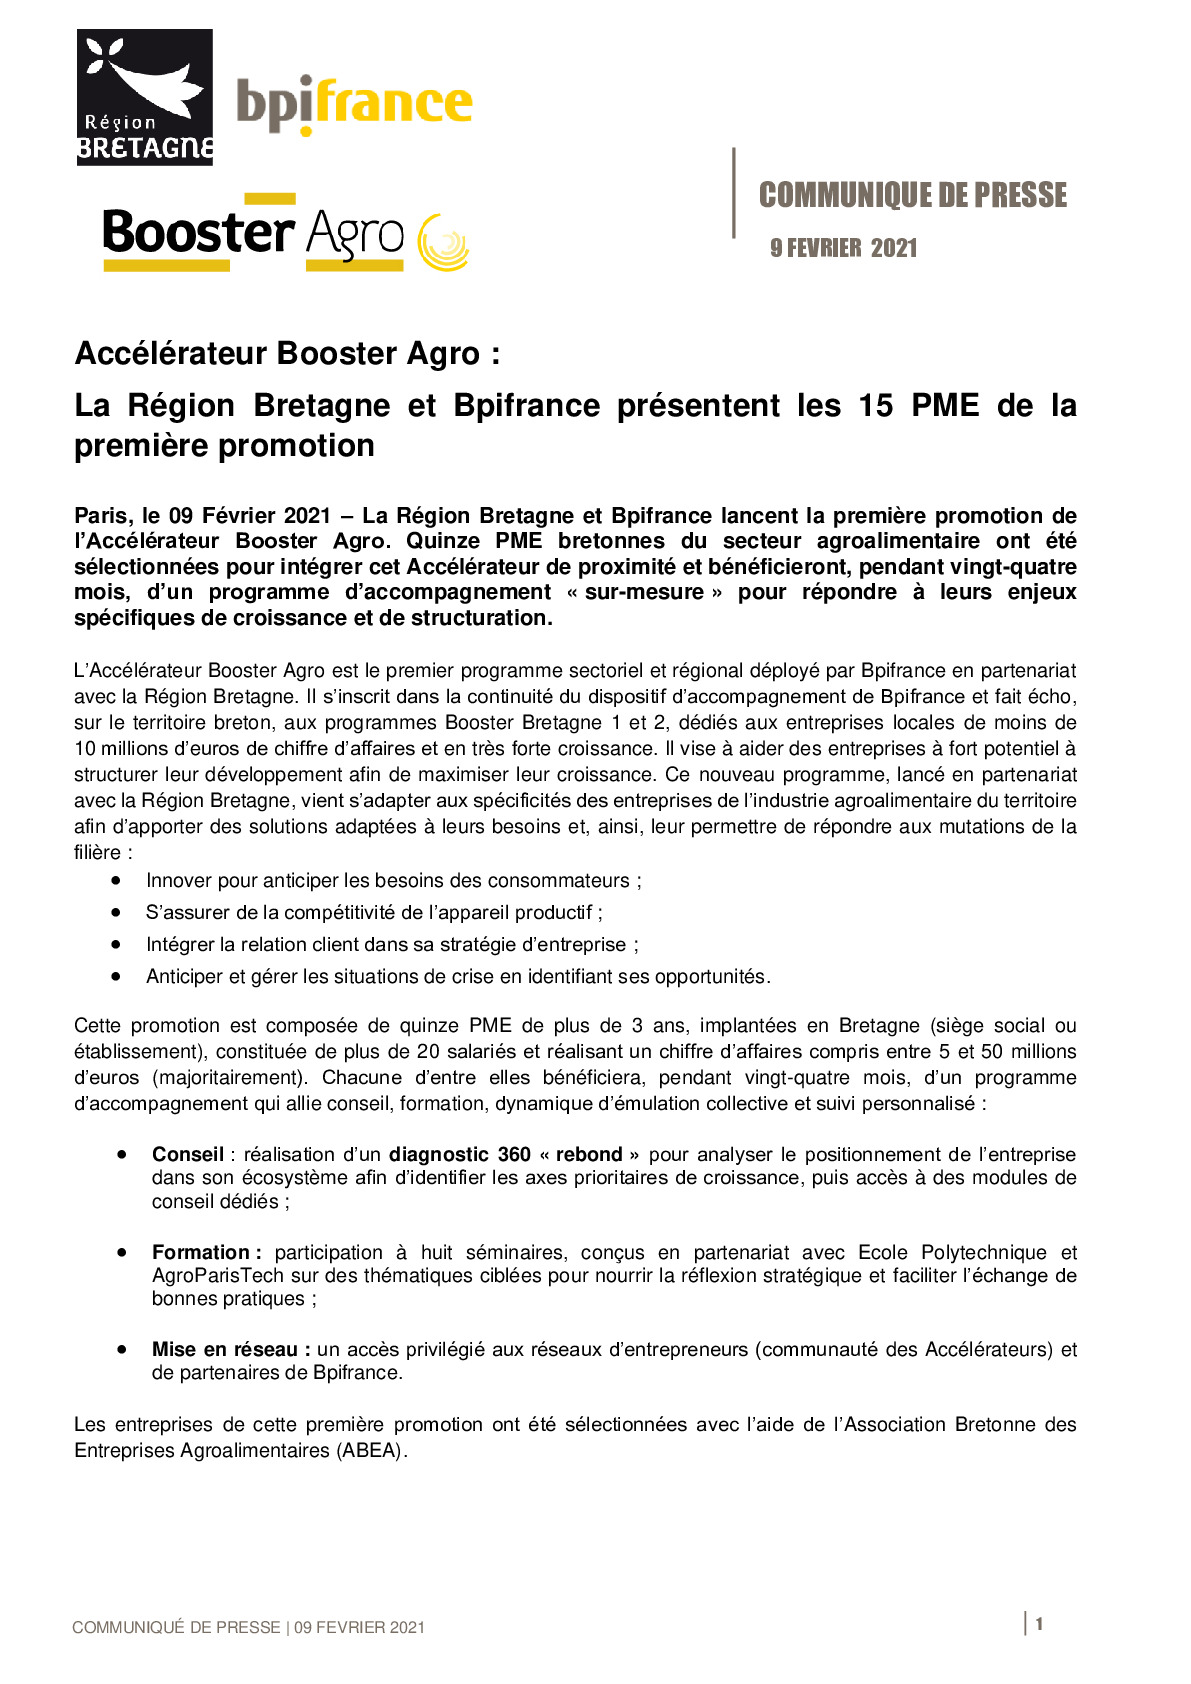 2021 02 09 – CP – Accelerateur Booster Agro – La Region Bretagne et Bpifrance presentent les 15 PME de la premiere promotion-pdf